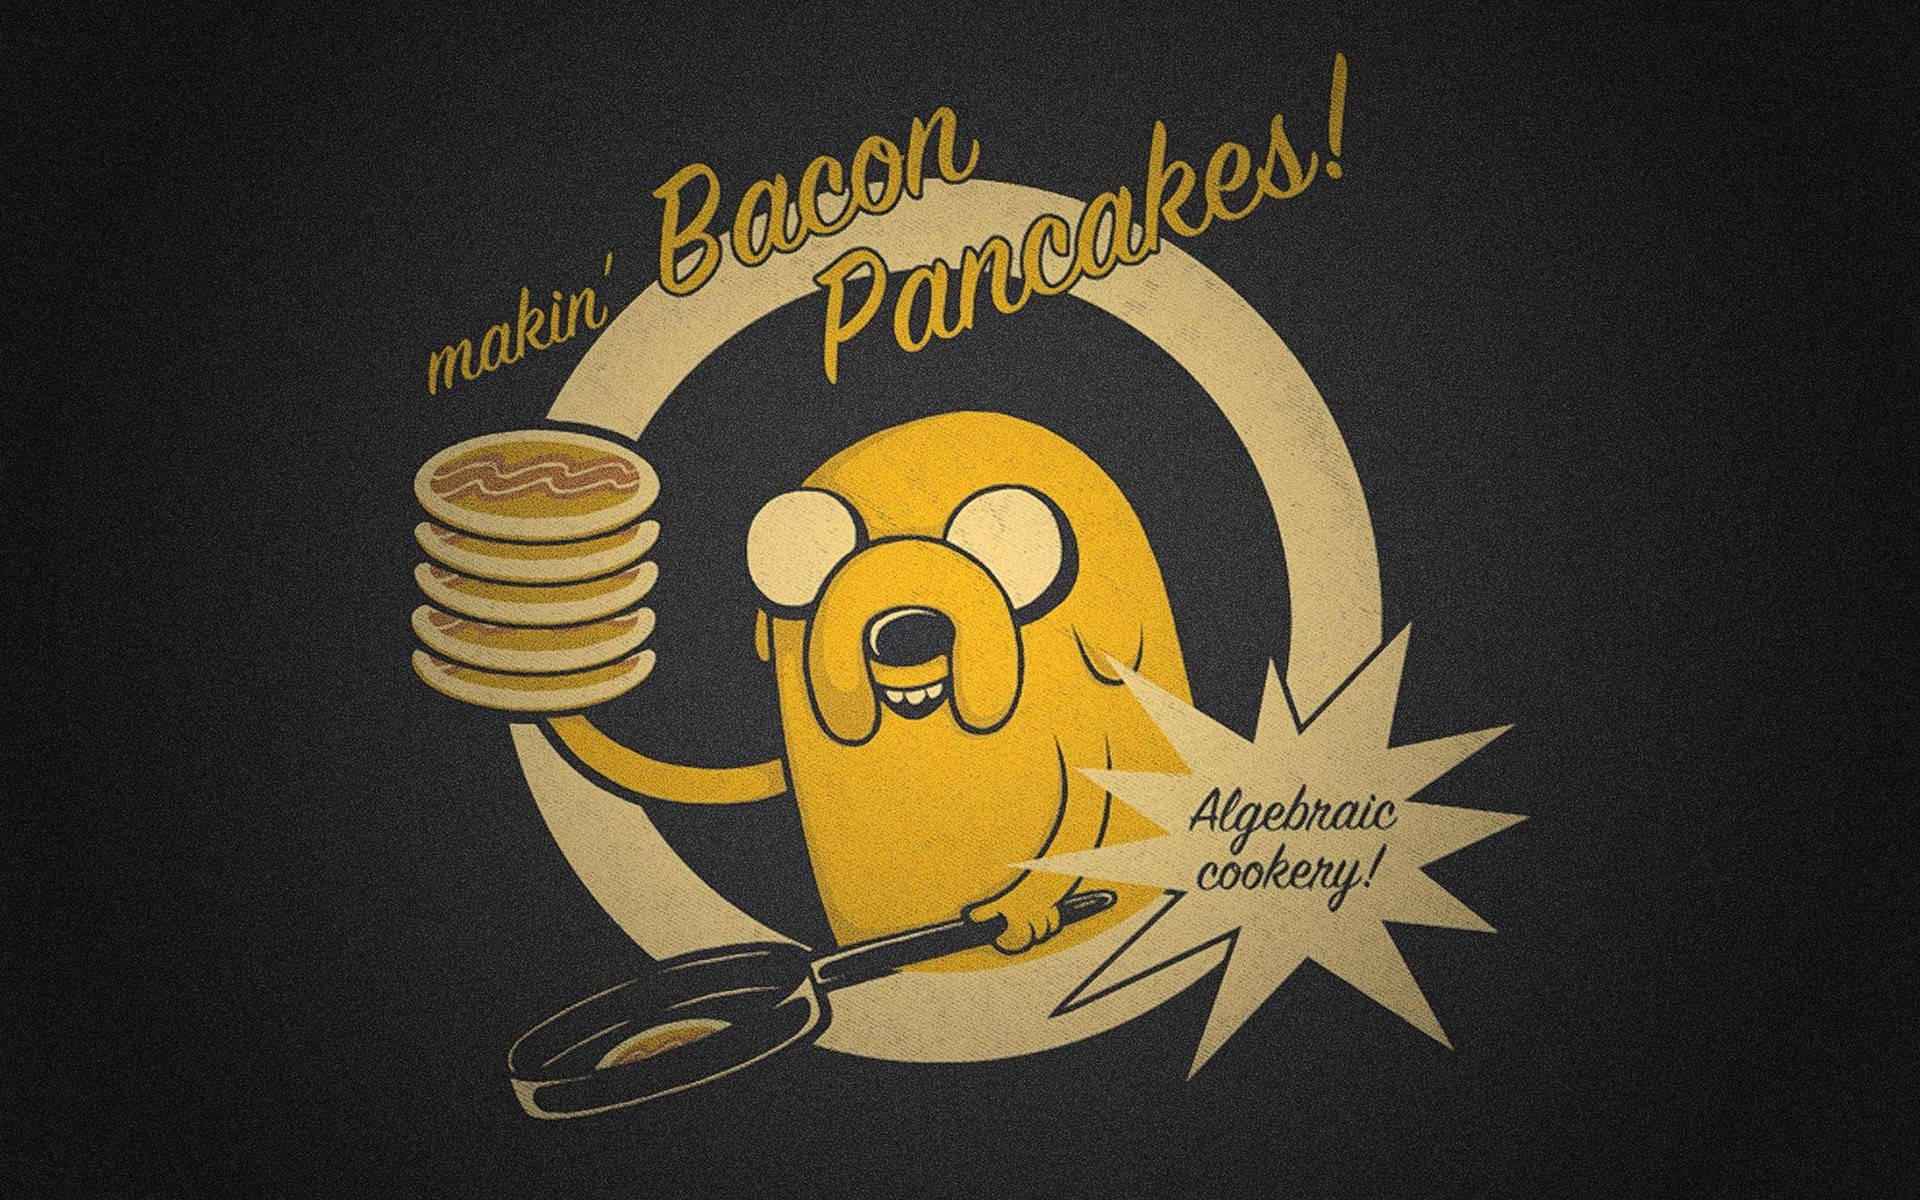 Jake Bacon Pancakes Nerd Wallpaper